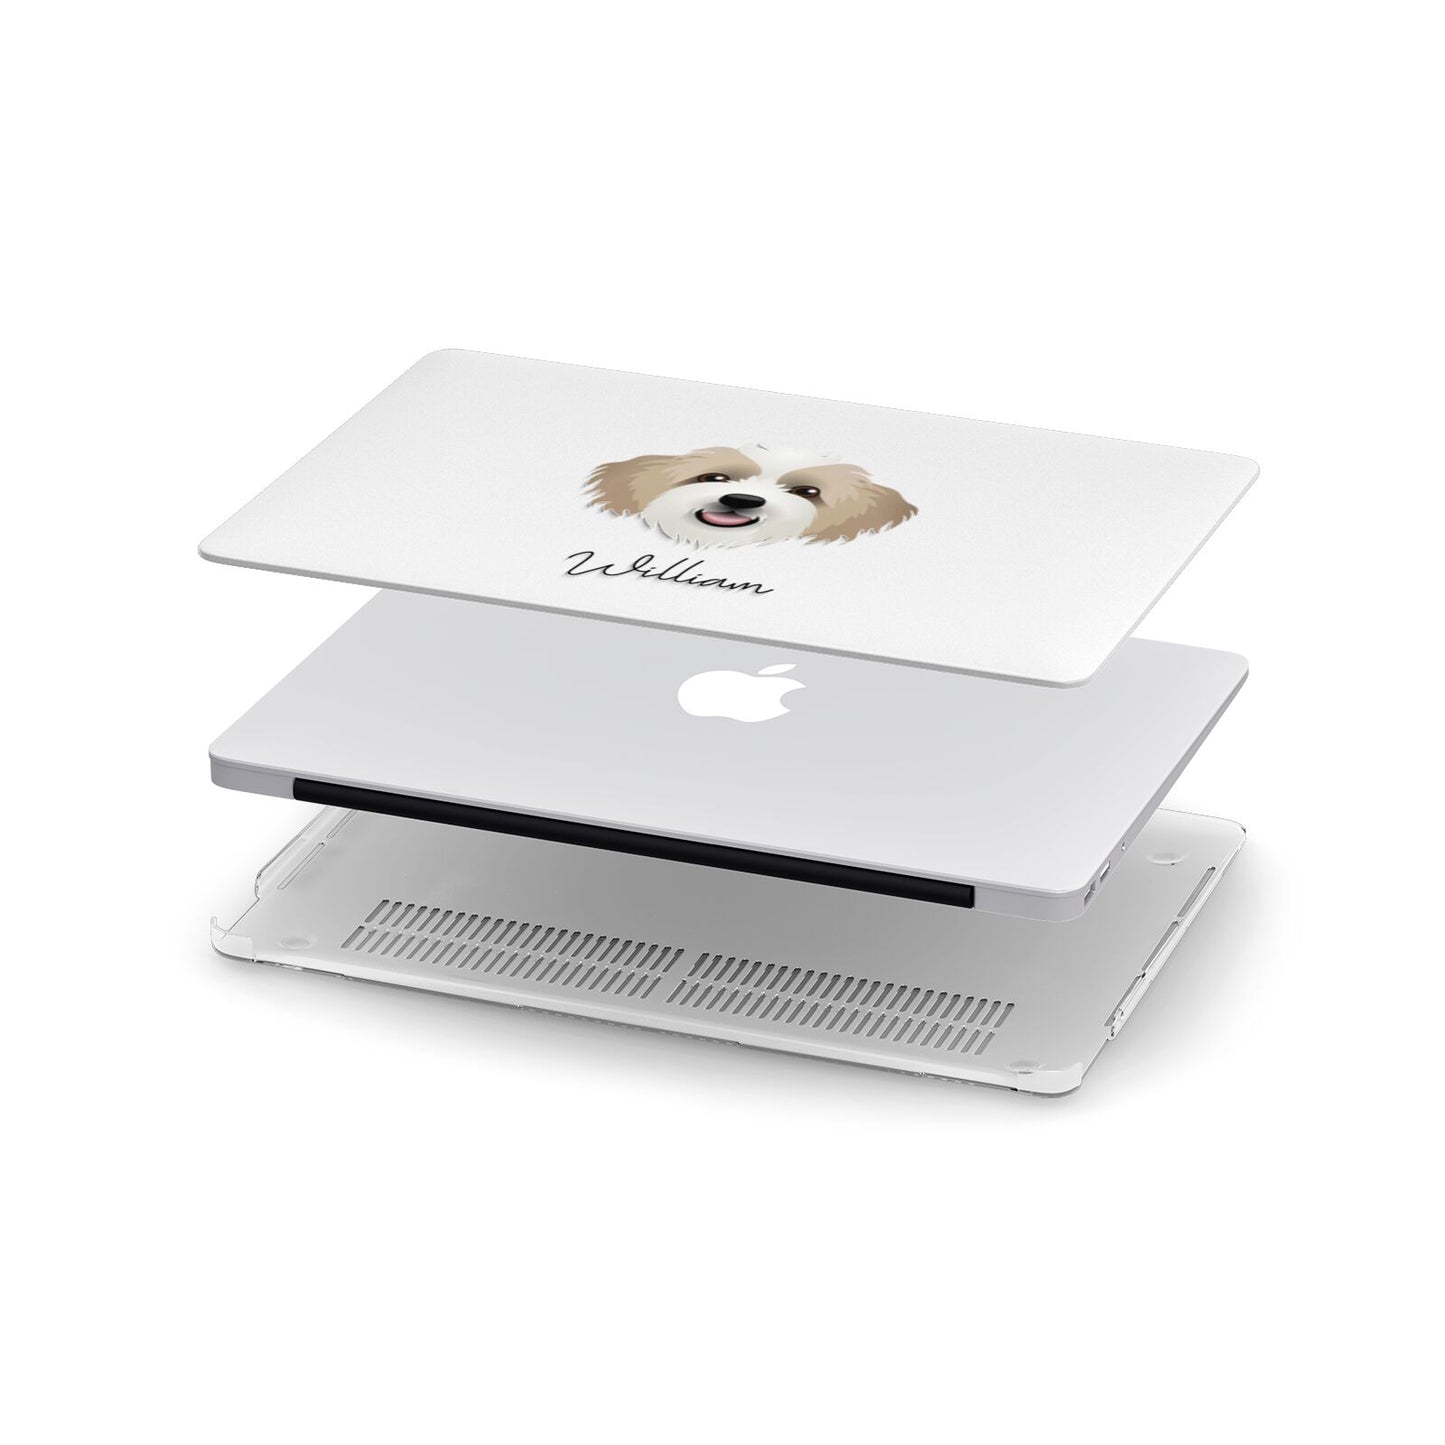 Bordoodle Personalised Apple MacBook Case in Detail